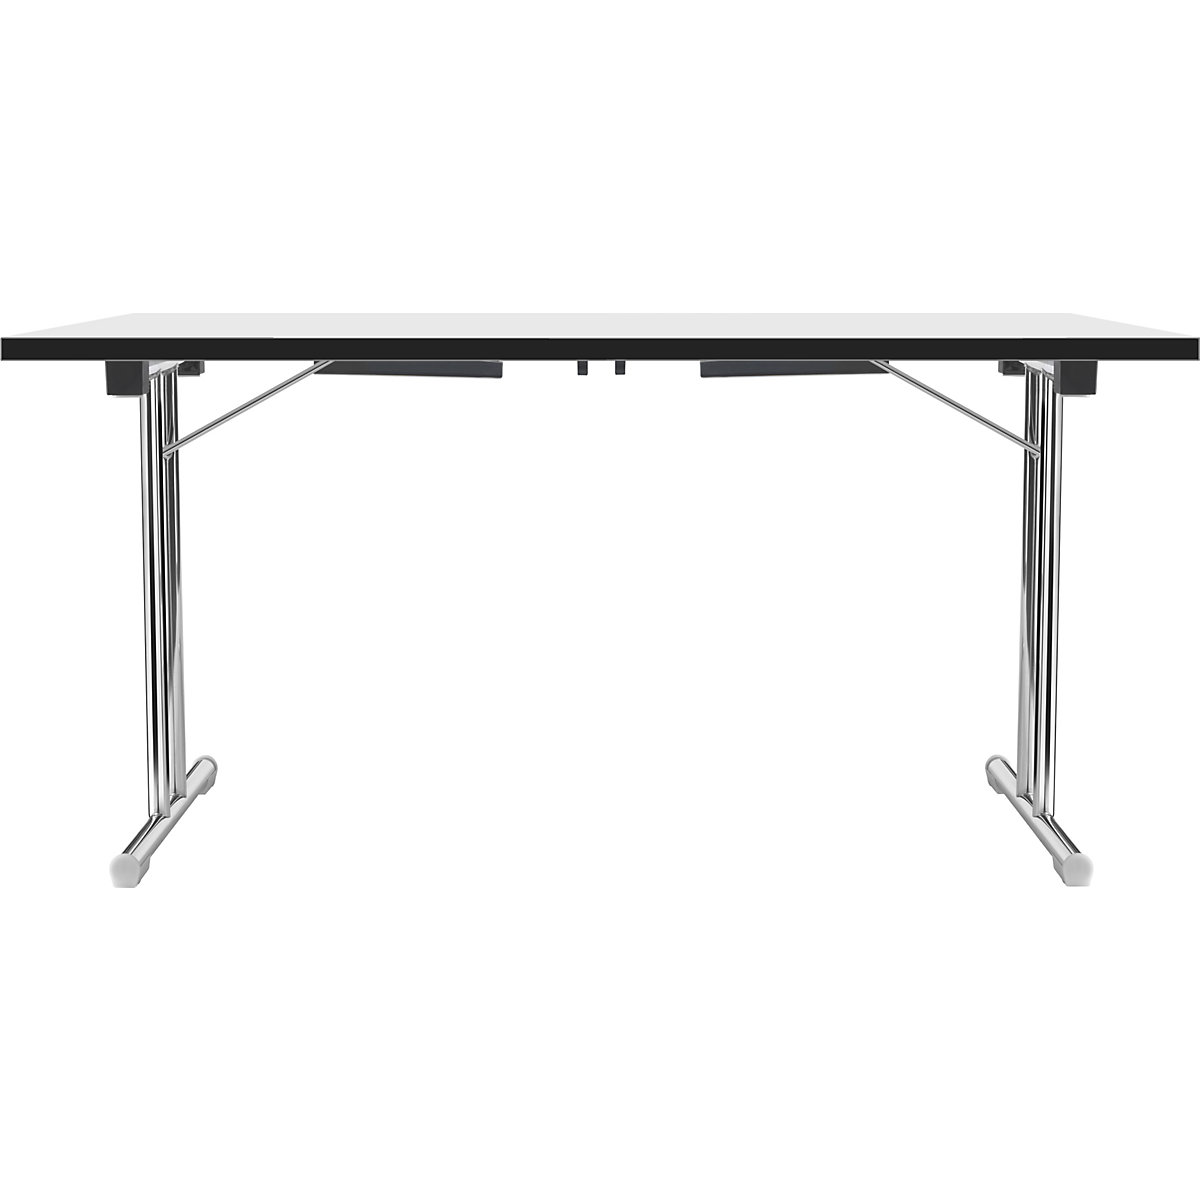 Tavolo pieghevole con basamento a T doppio, telaio in tubo tondo d'acciaio, cromato, bianco/nero, largh. x prof. 1200 x 600 mm-7